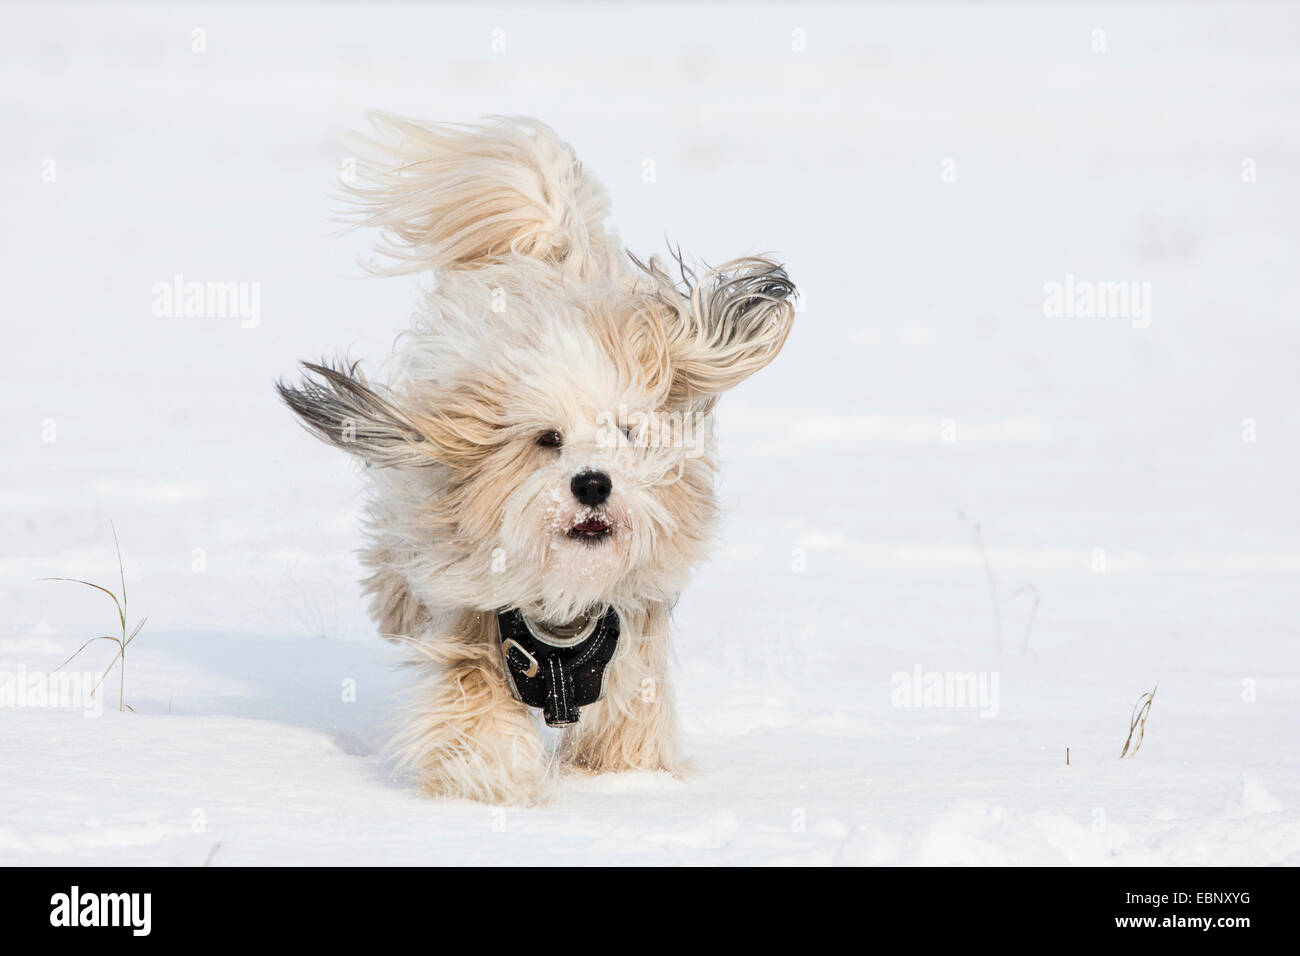 Terrier tibétain Tsang, Apso, Dokhi Apso (Canis lupus f. familiaris), un an, sable blanc et brillant homme d'exécution dans la neige vers la caméra, Allemagne Banque D'Images